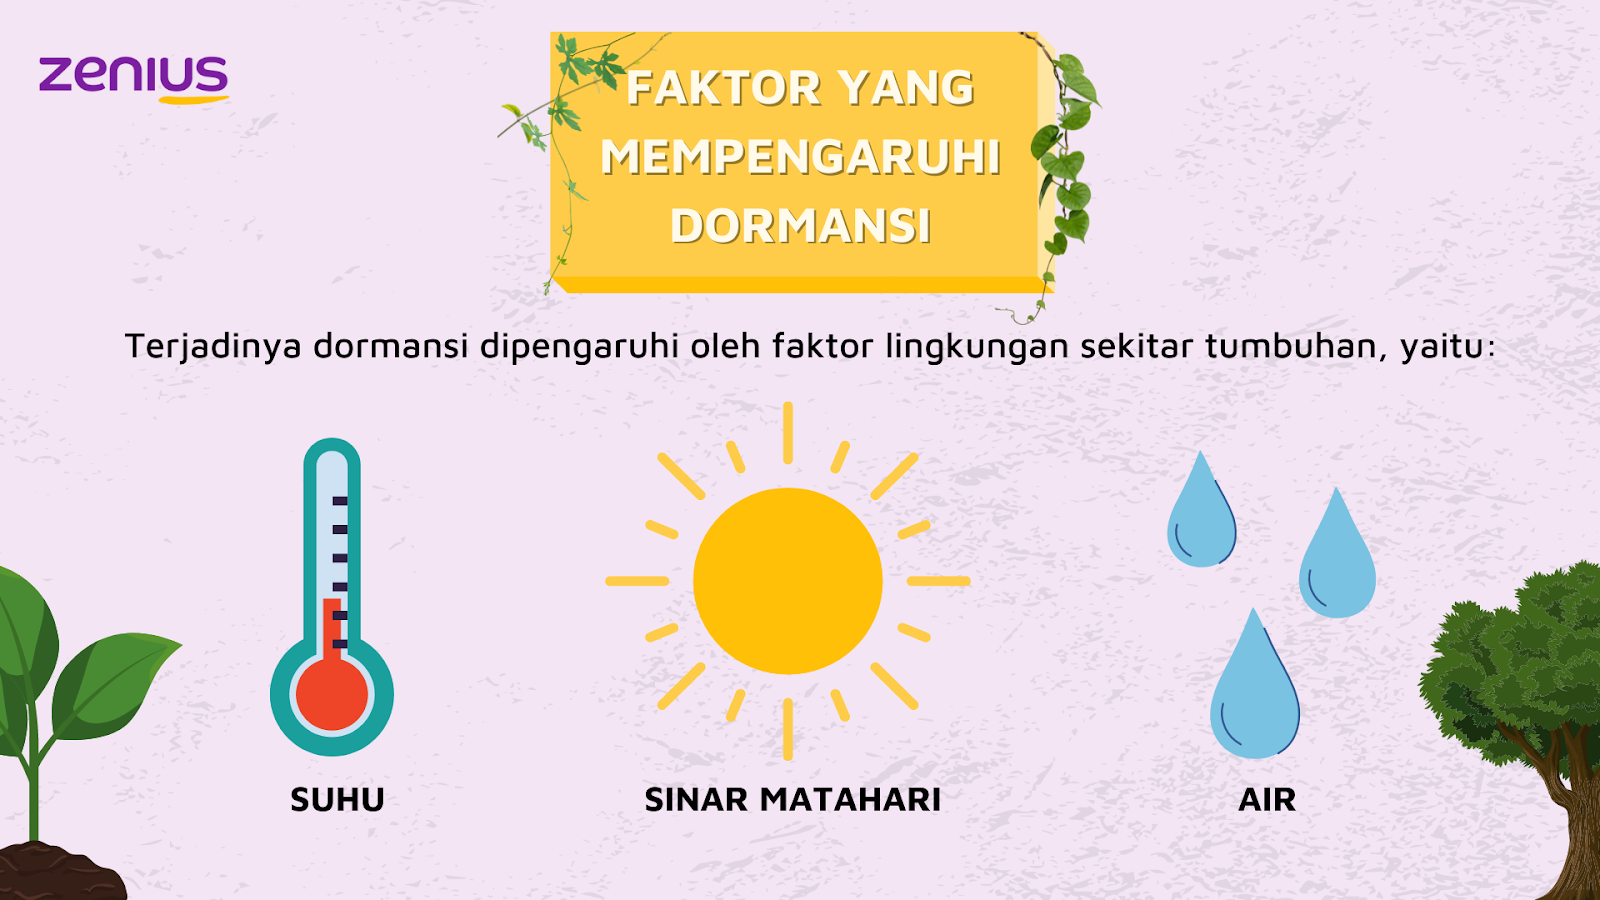 Faktor yang mempengaruhi dormansi adalah suhu, matahari, dan air.